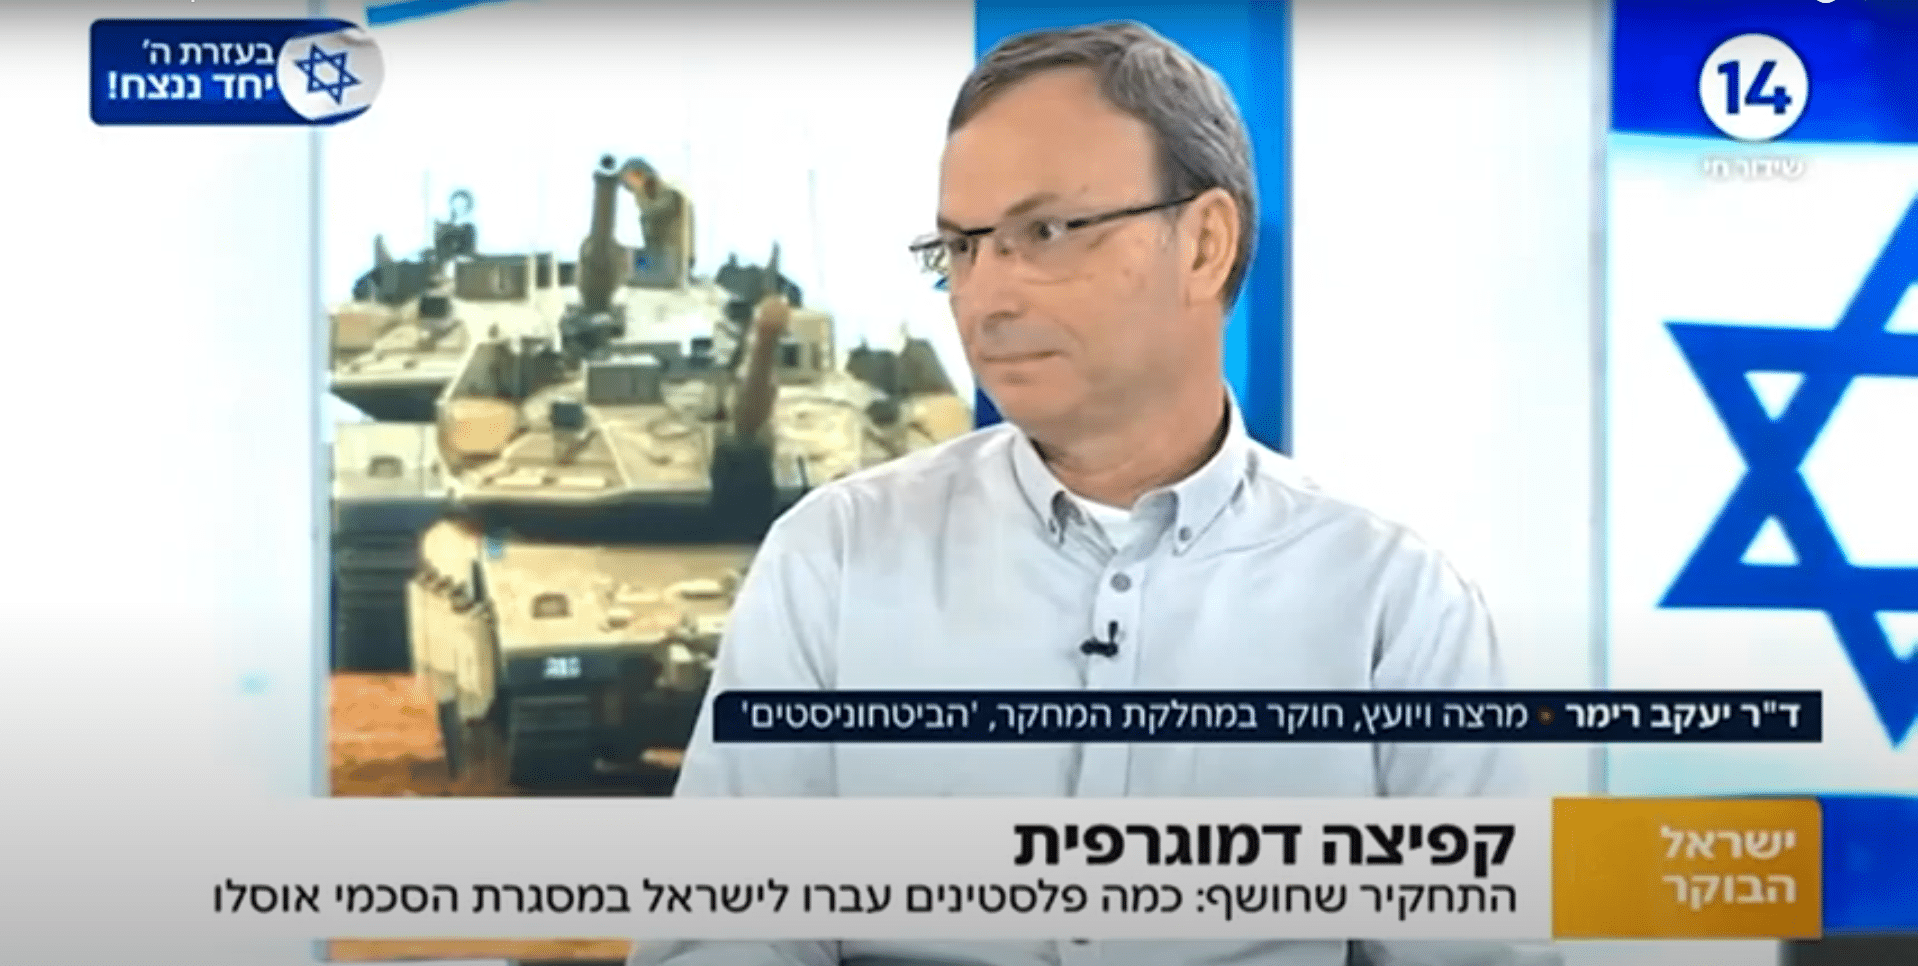 ד"ר יעקב רימר בערוץ 14 תוכנית ישראל הבוקר מדבר על הקפיצה הדמוגרפית